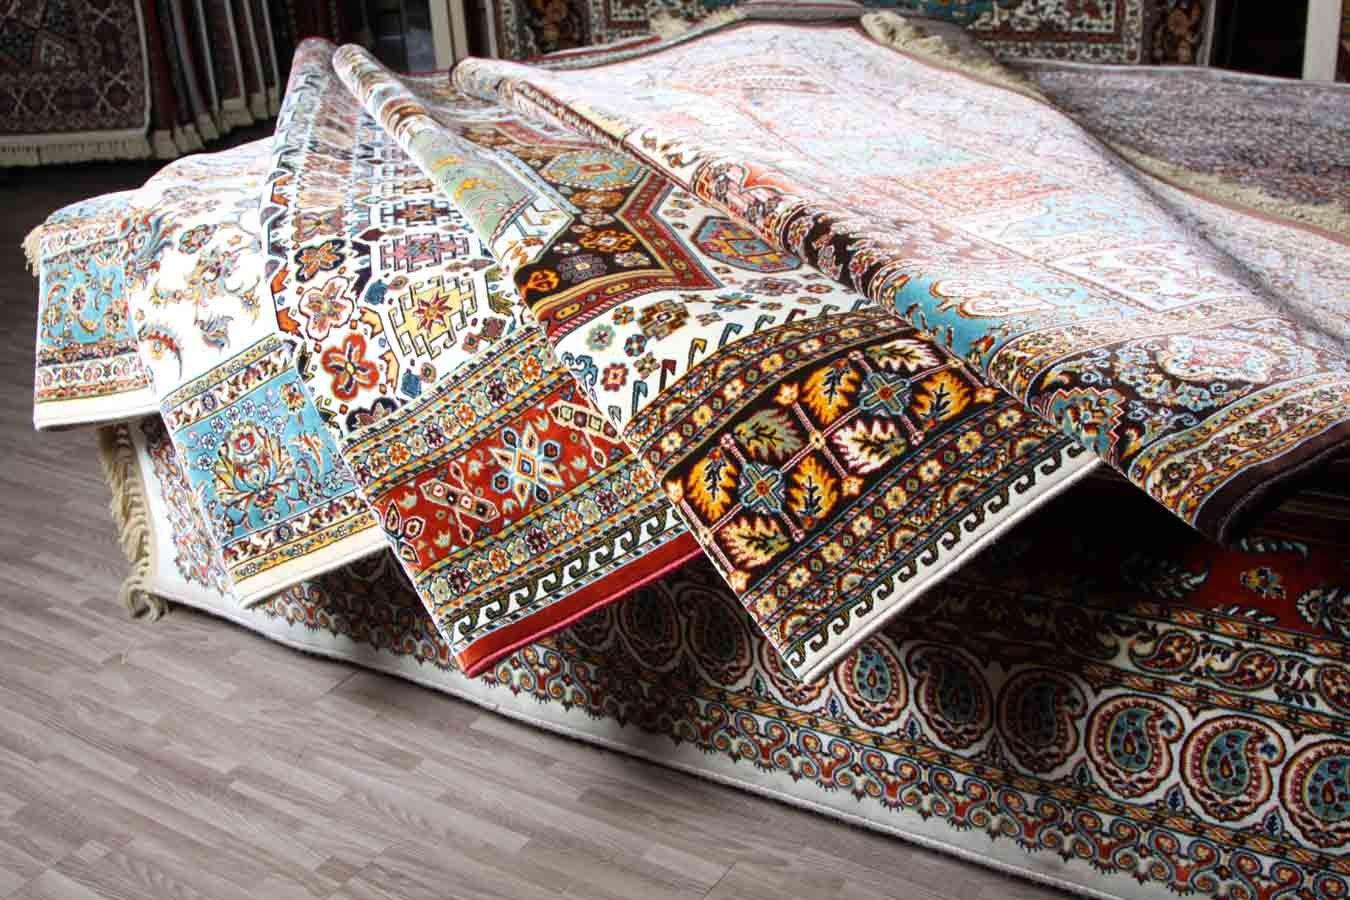 لیست فرش فروشی های شیراز